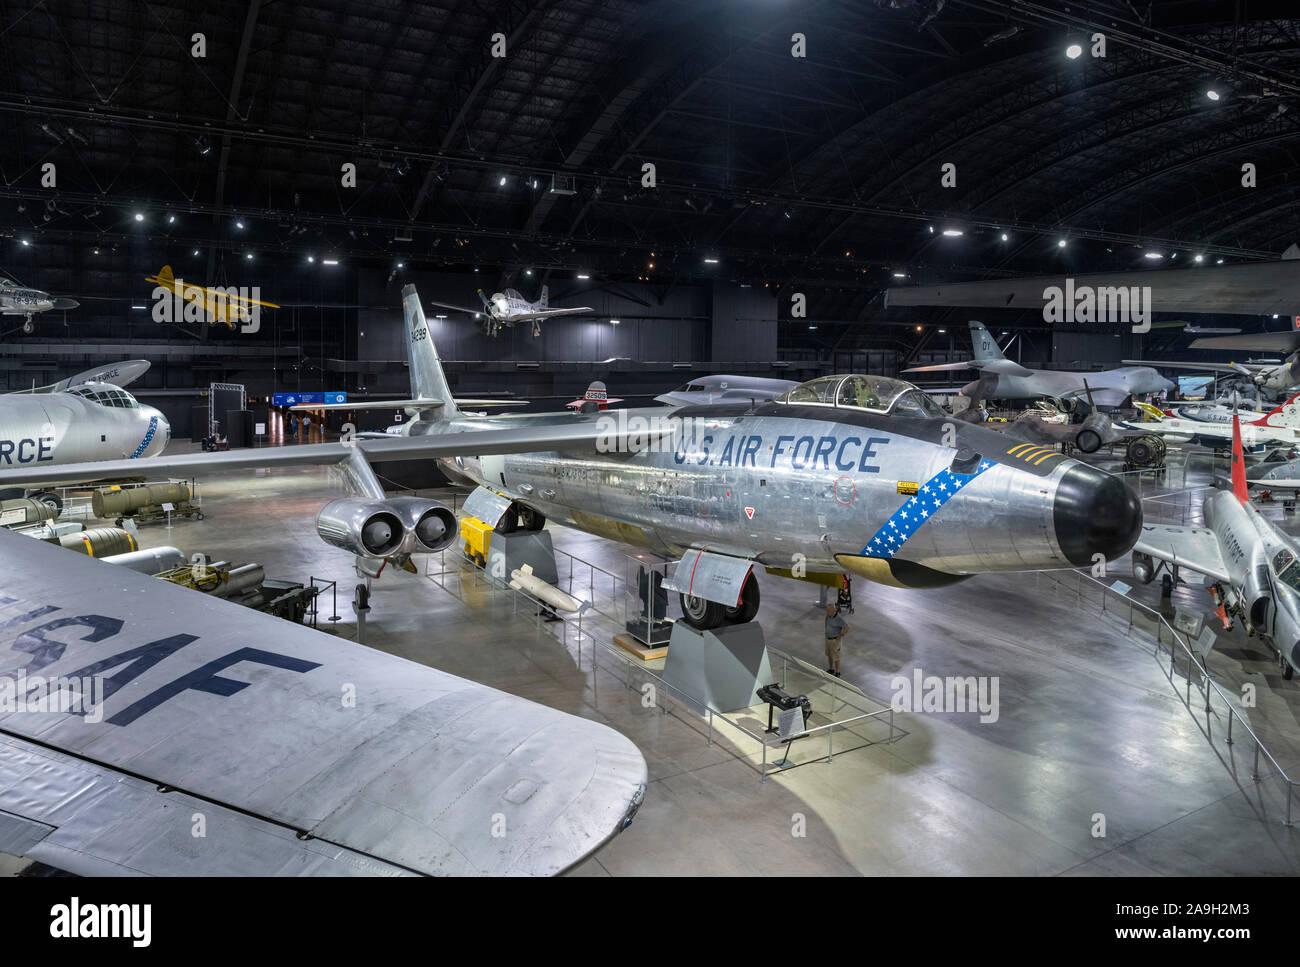 Ver más aviones en el Museo Nacional de la Fuerza Aérea de los Estados Unidos con un Boeing RB-47H Stratojet en primer plano, Dayton, Ohio, EE.UU. Foto de stock